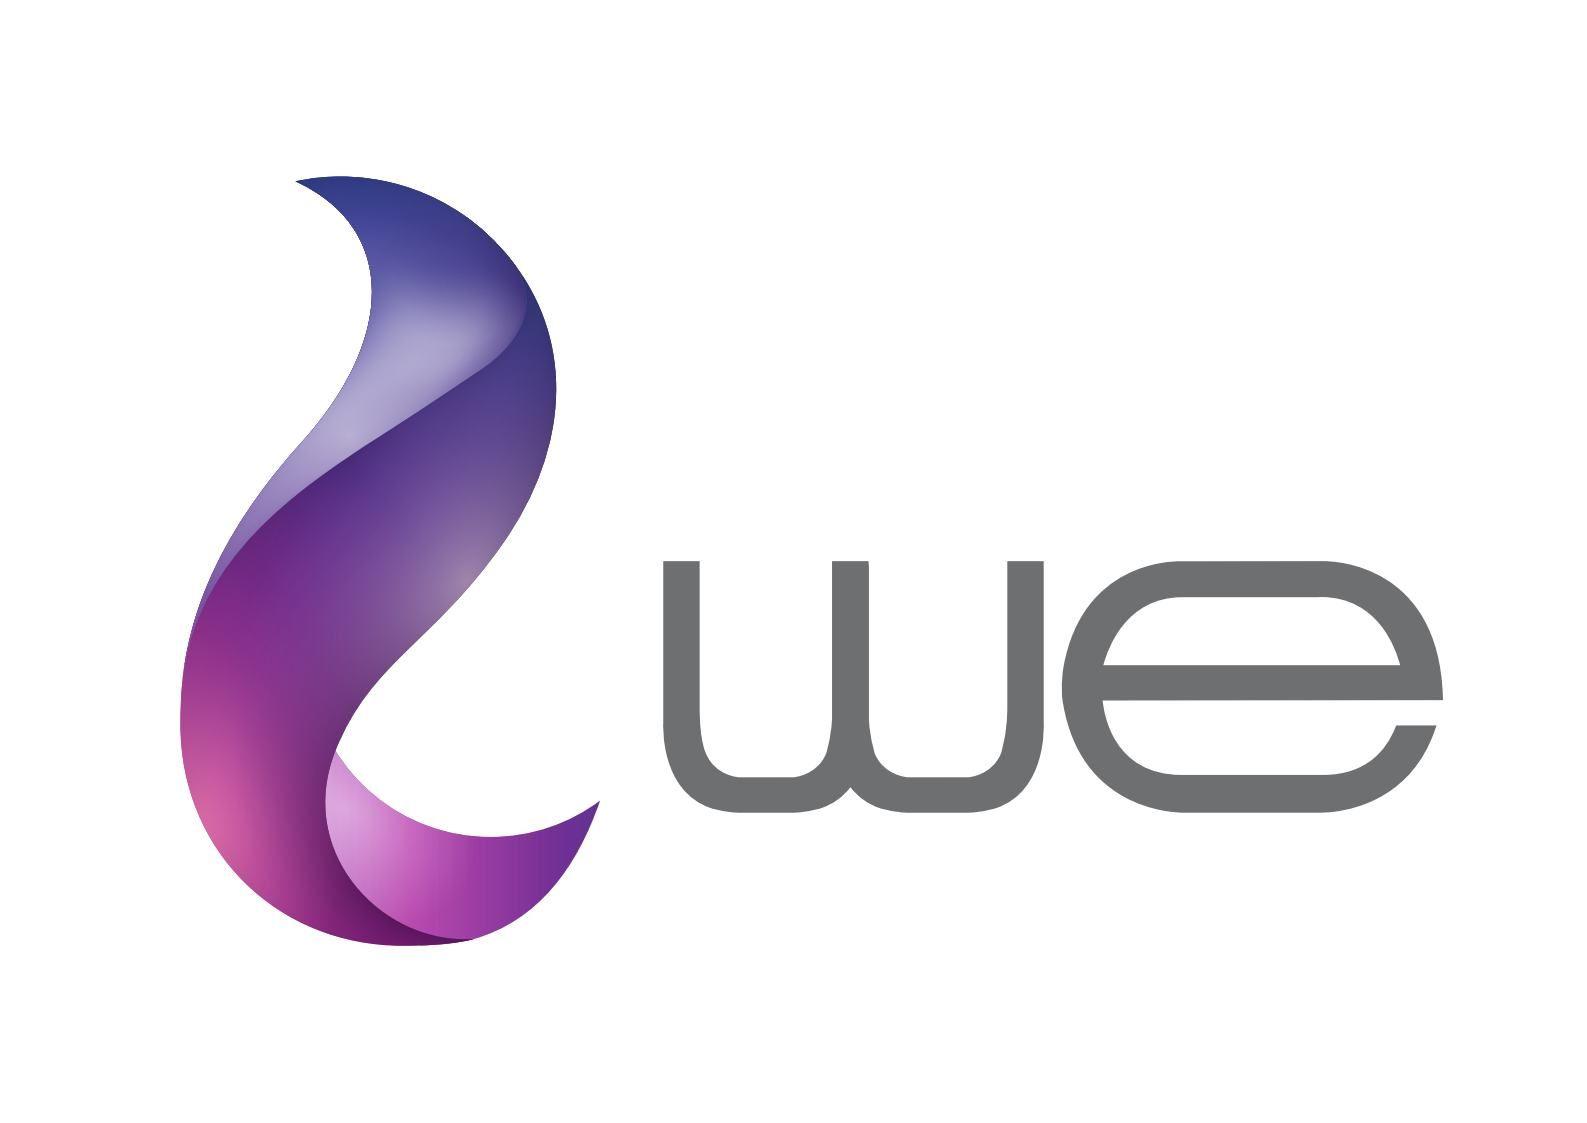 We Logo - Culture Wheel - All Events at El Sawy Culture wheel at 2018-1-12